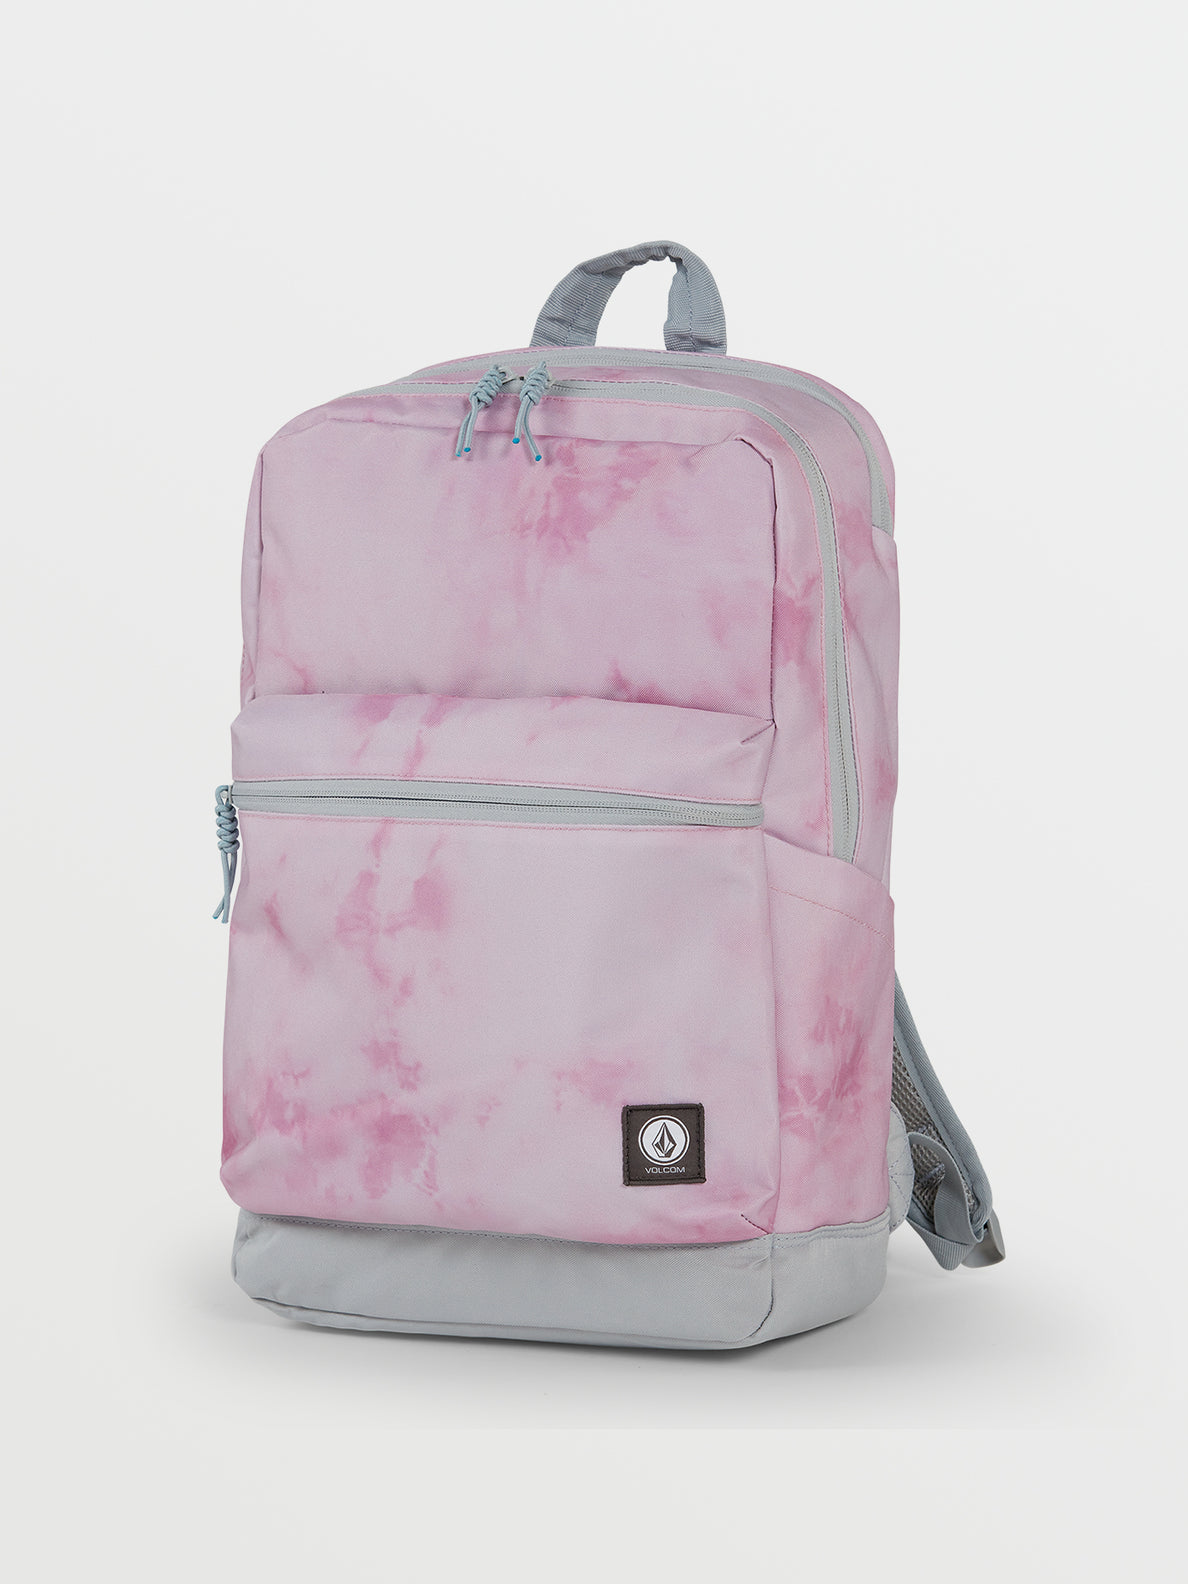 Voclom School Daze Backpack - Faded Mauve Backpack